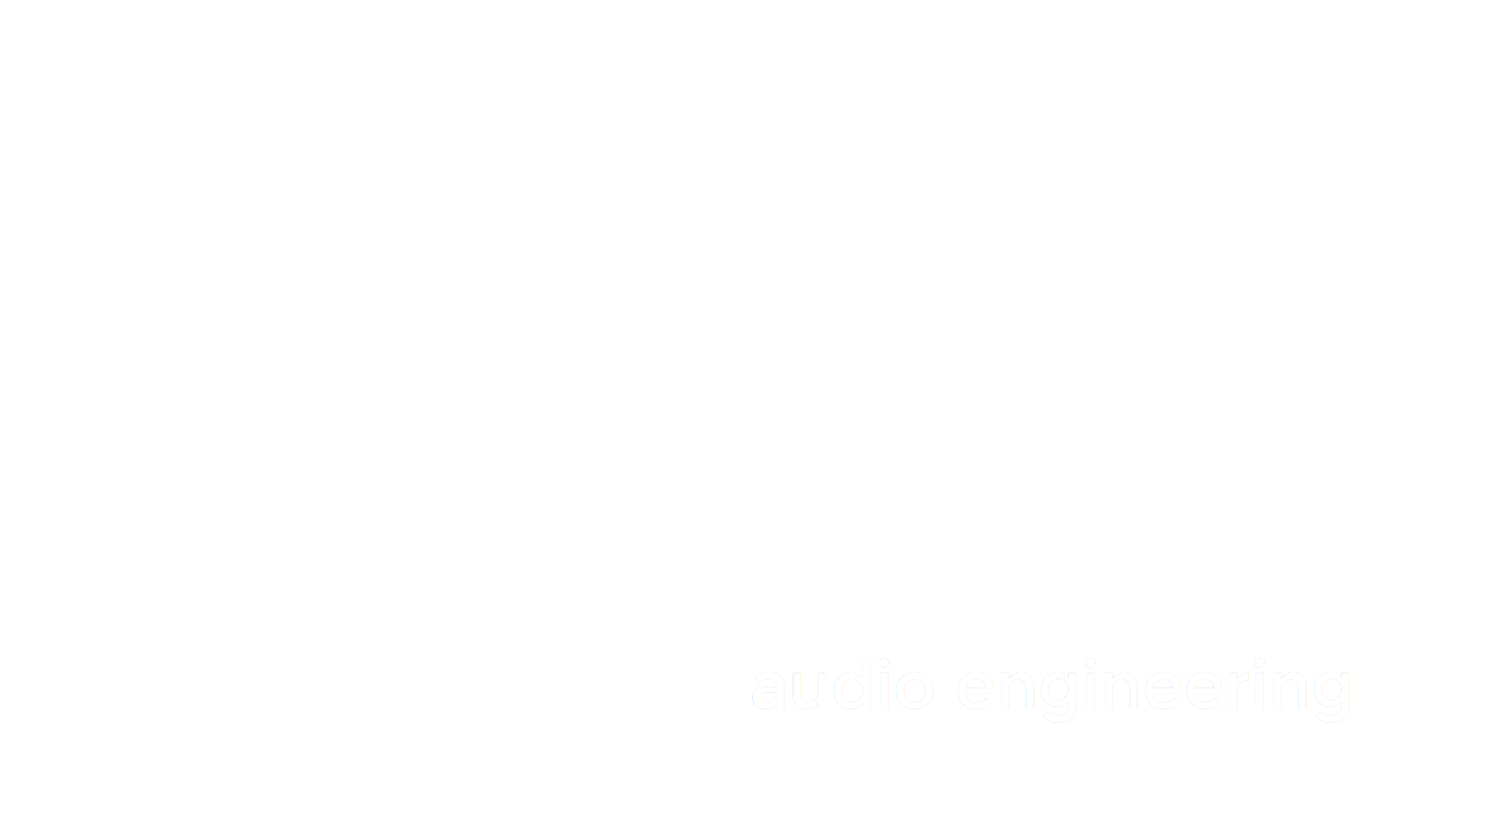 Aaron J. Percy